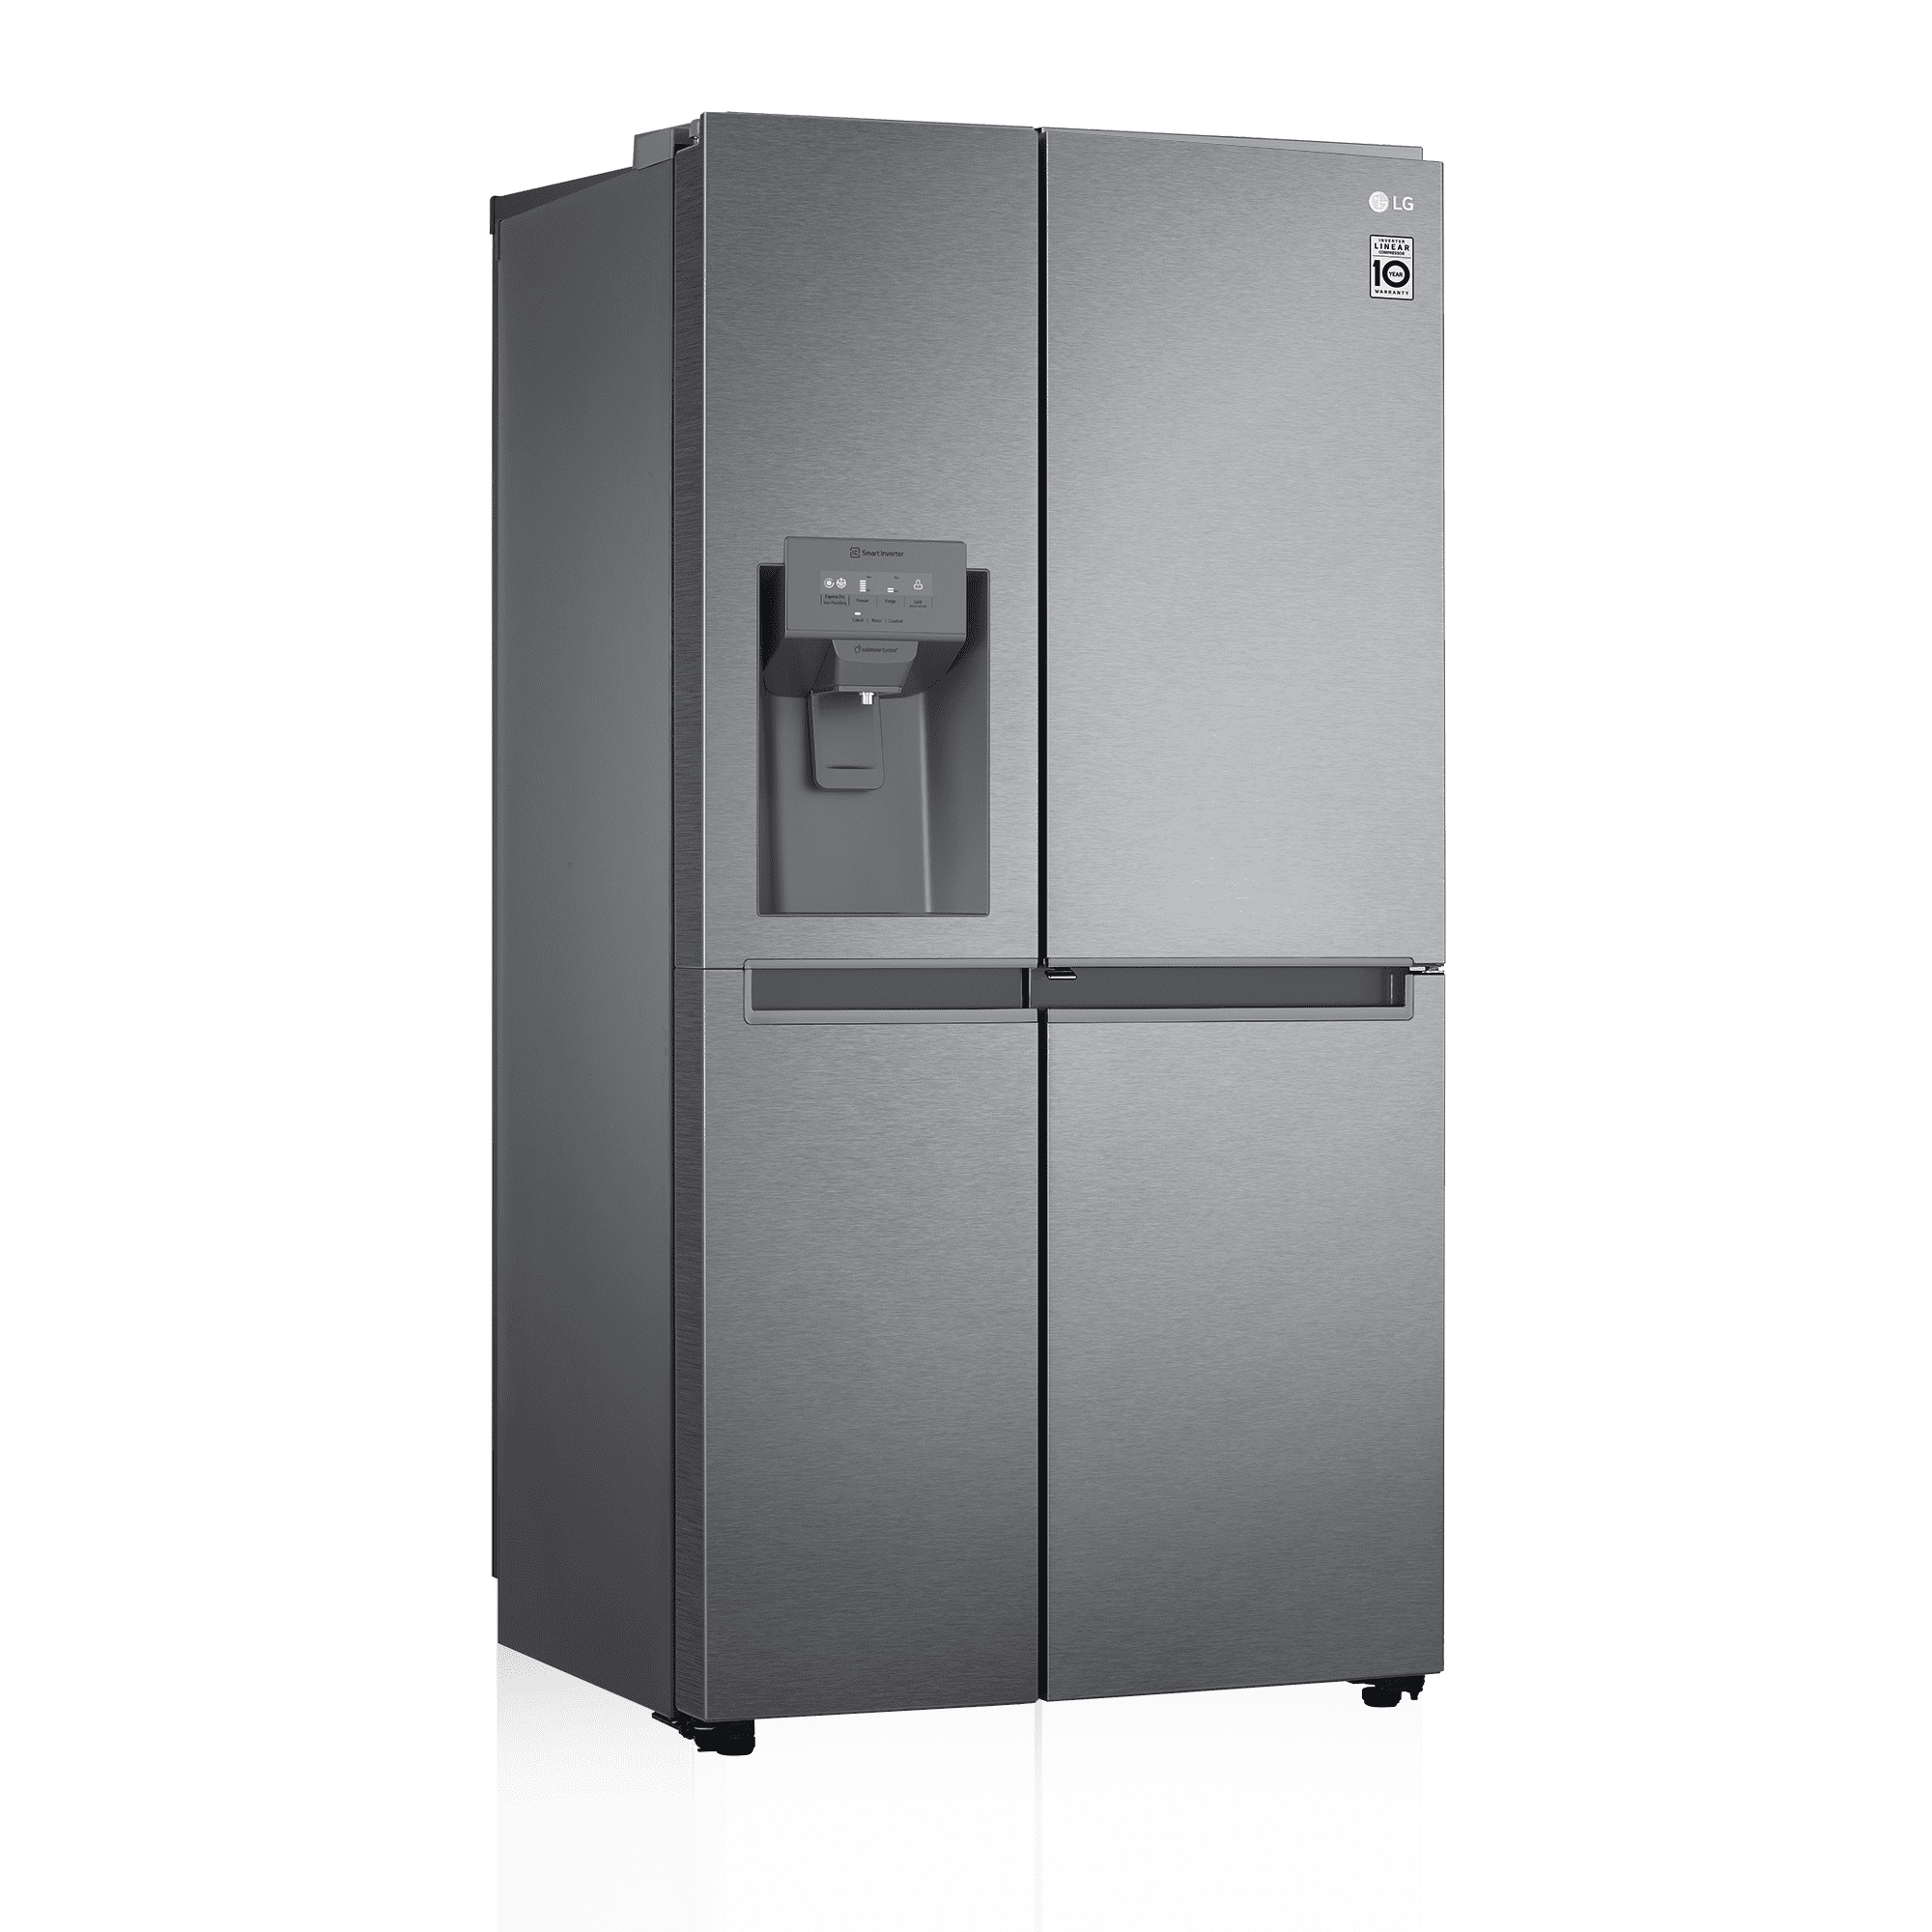 La OCU compara precios del frigorífico americano LG: 500 euros más